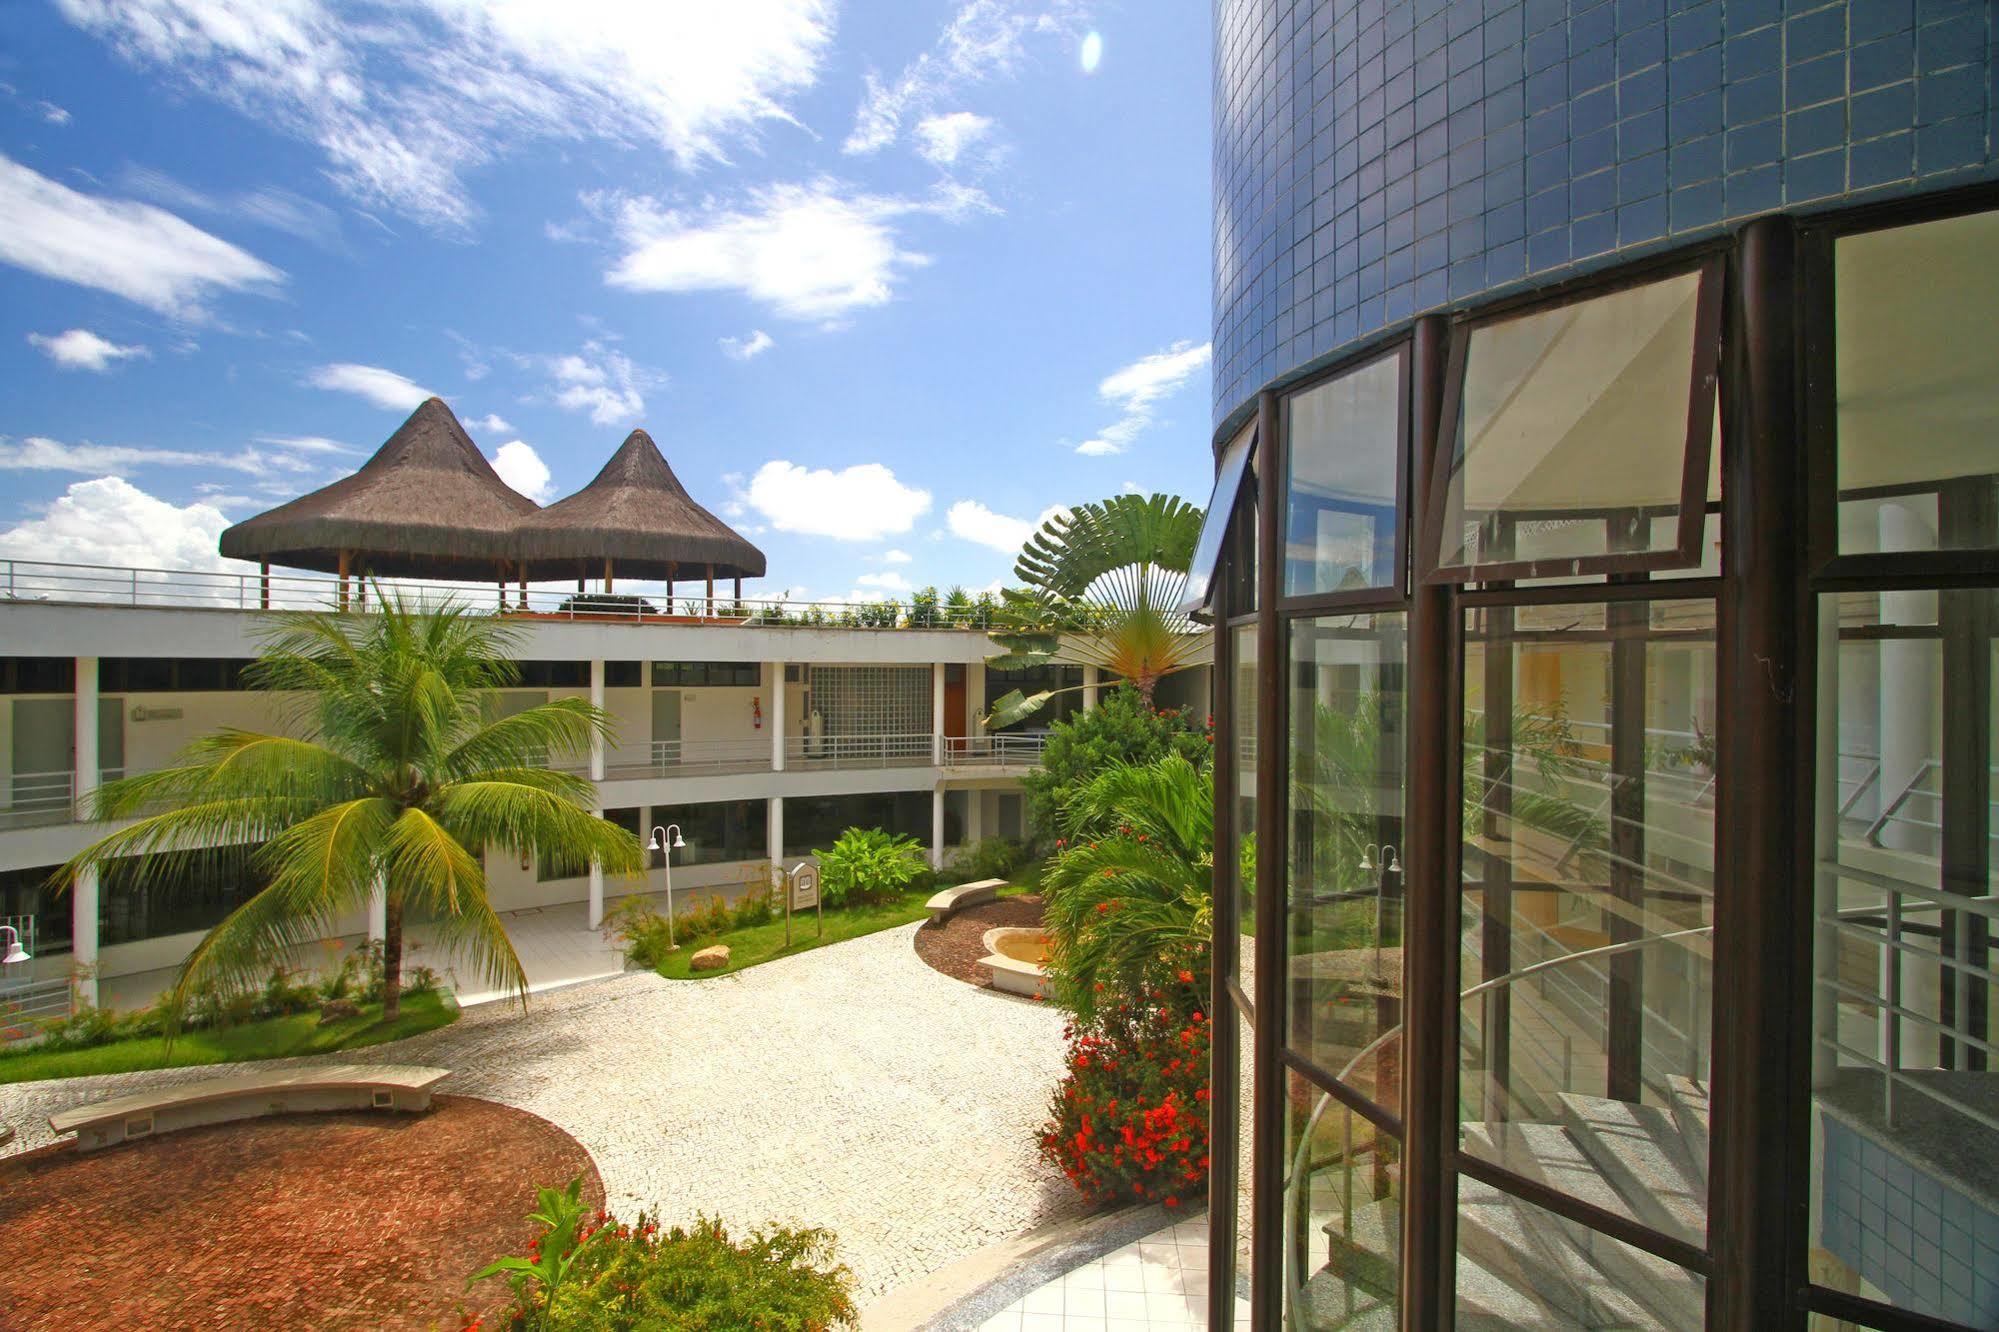 Hotel Recanto Wirapuru Fortaleza  Bagian luar foto